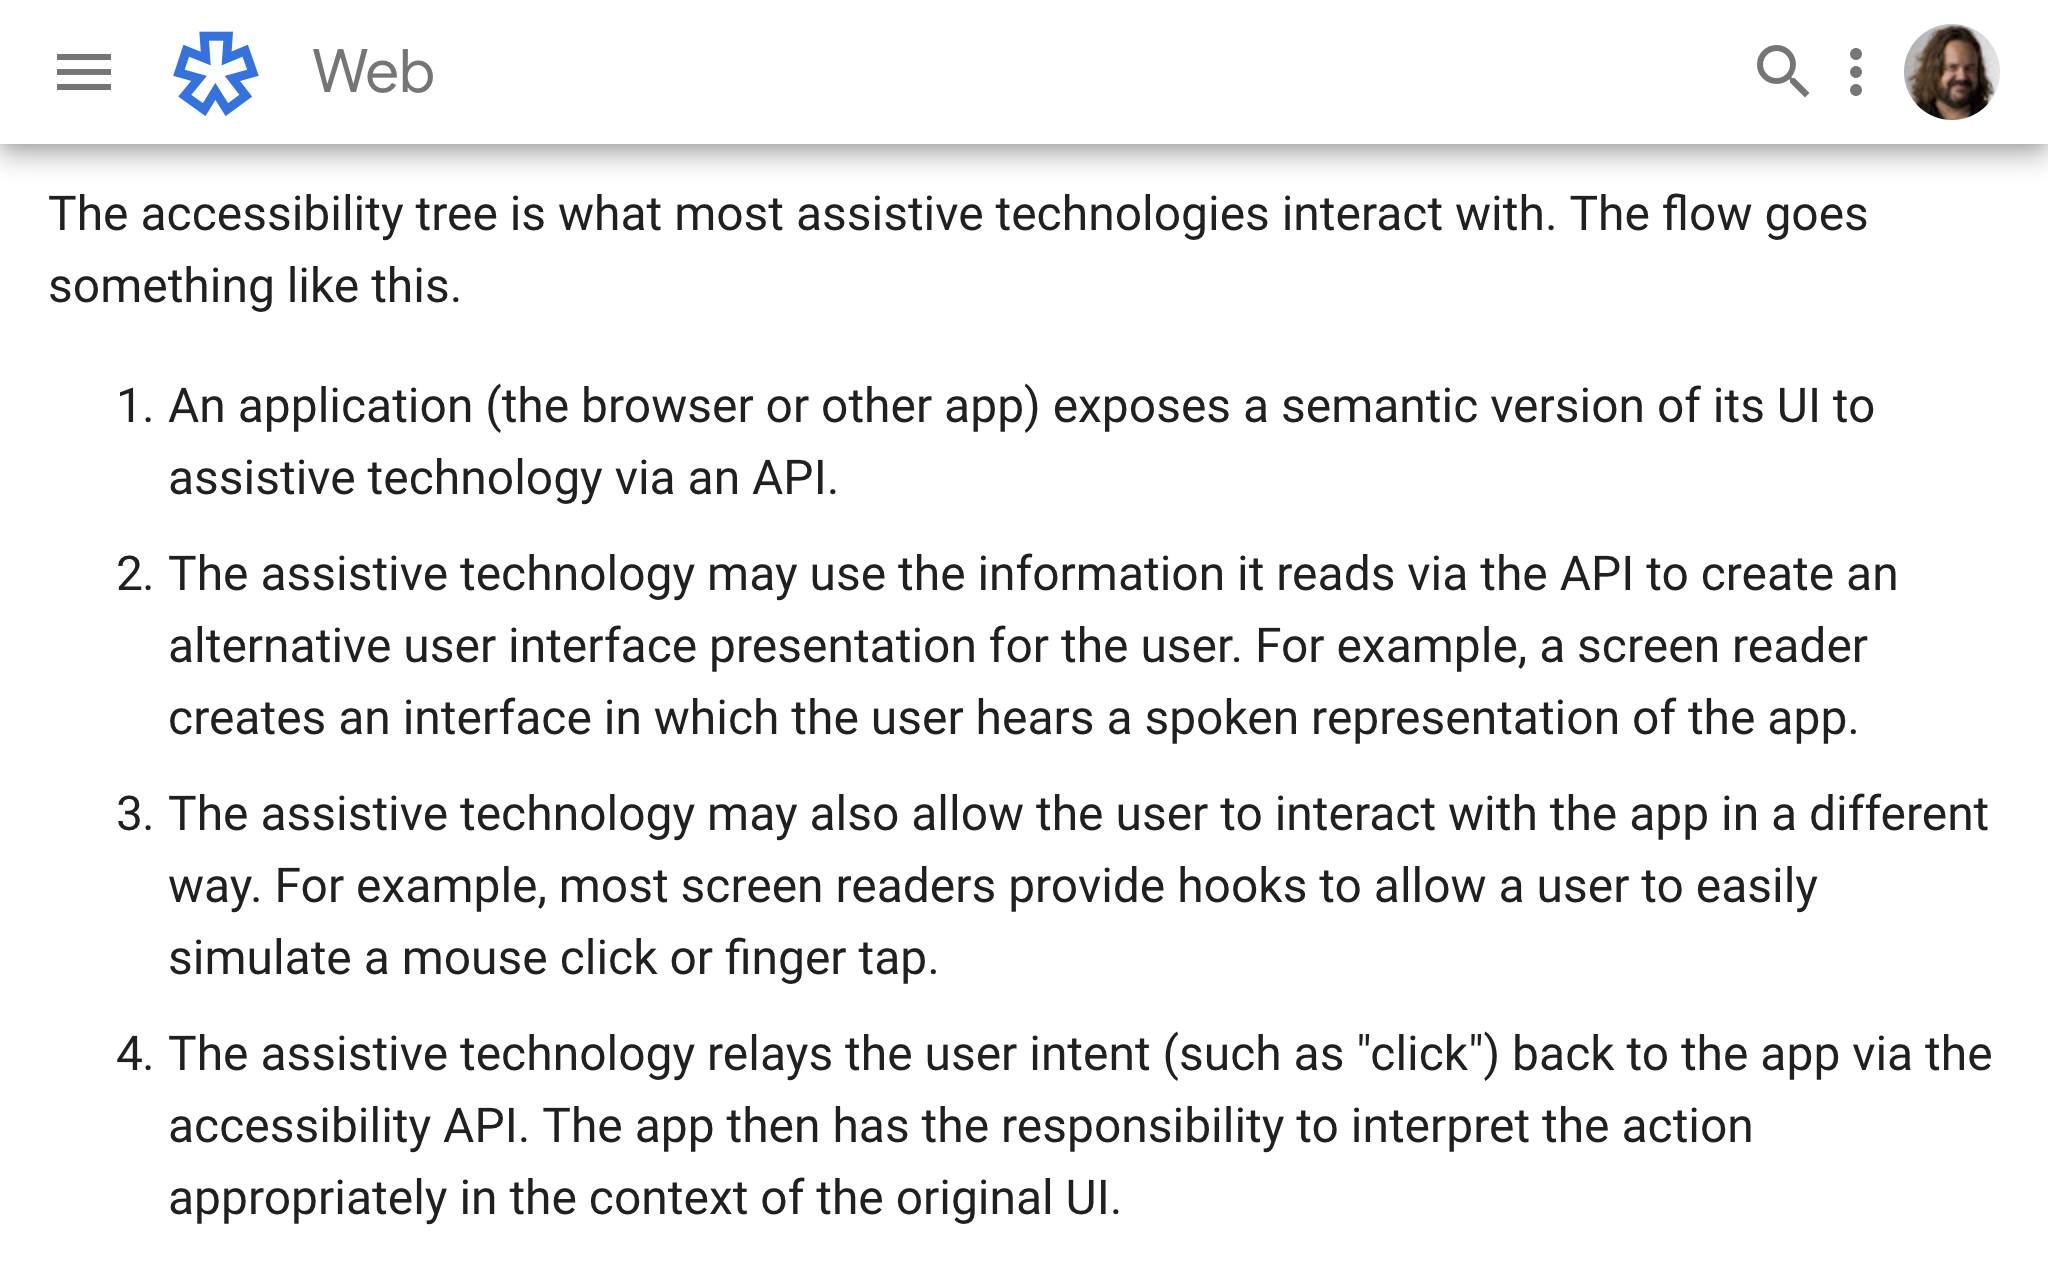 Google A11y Tree